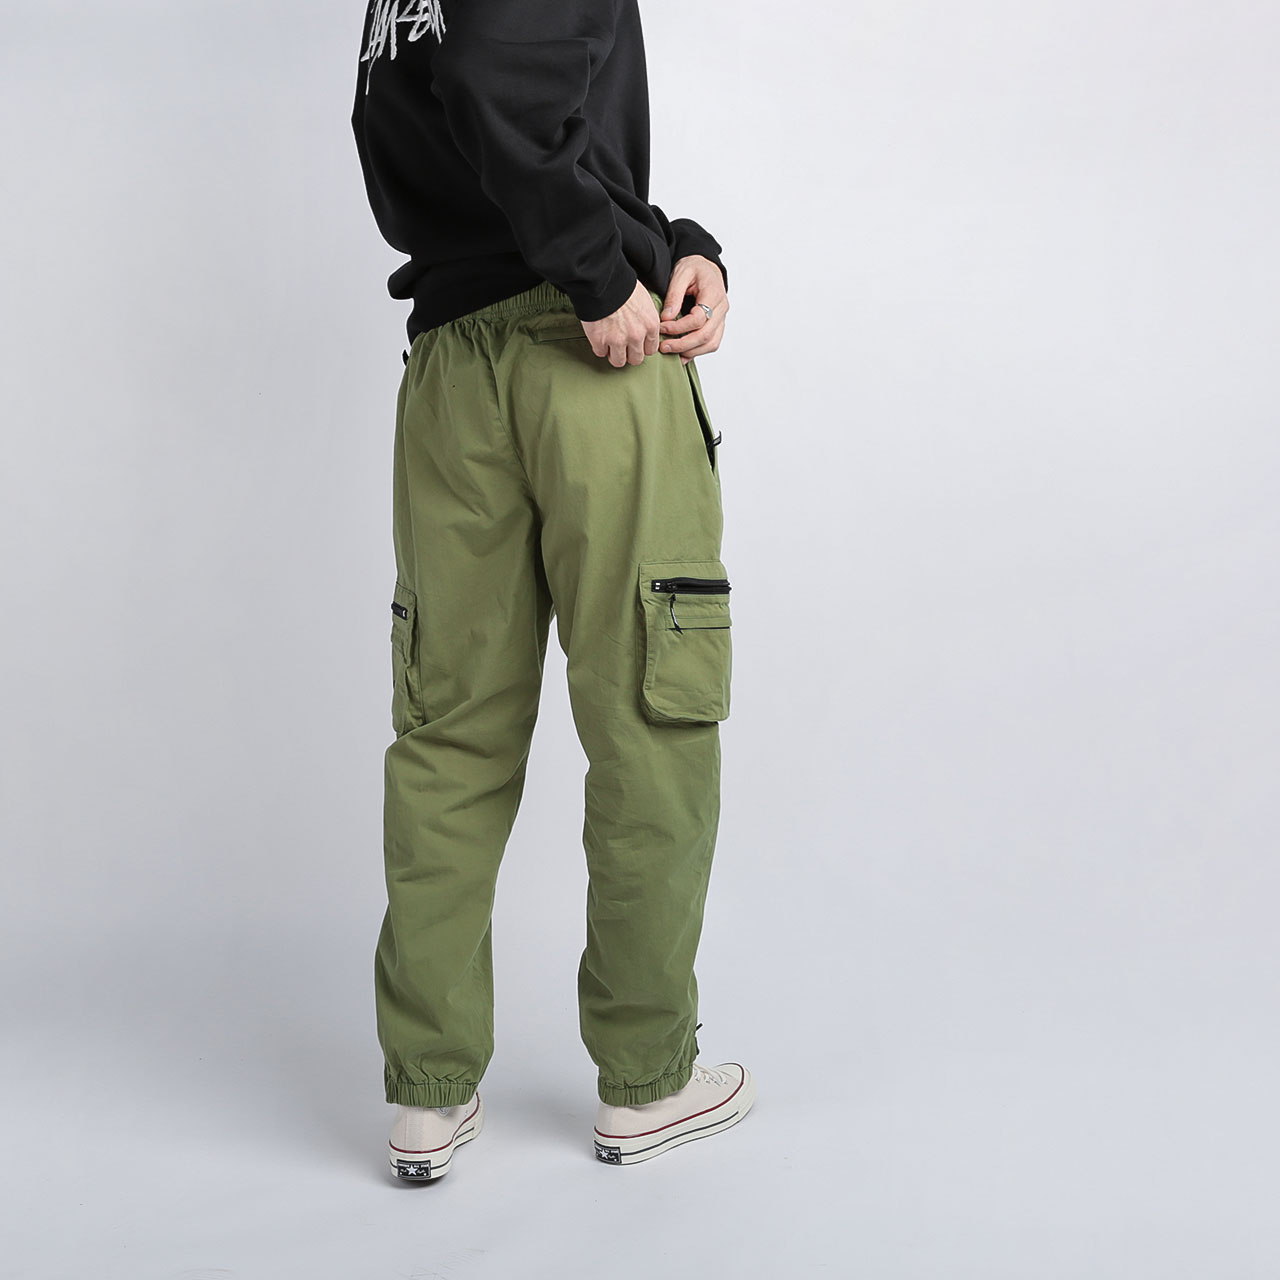 мужские зеленые брюки Stussy Big Pocket Nylon Pant 116408 - цена, описание, фото 4